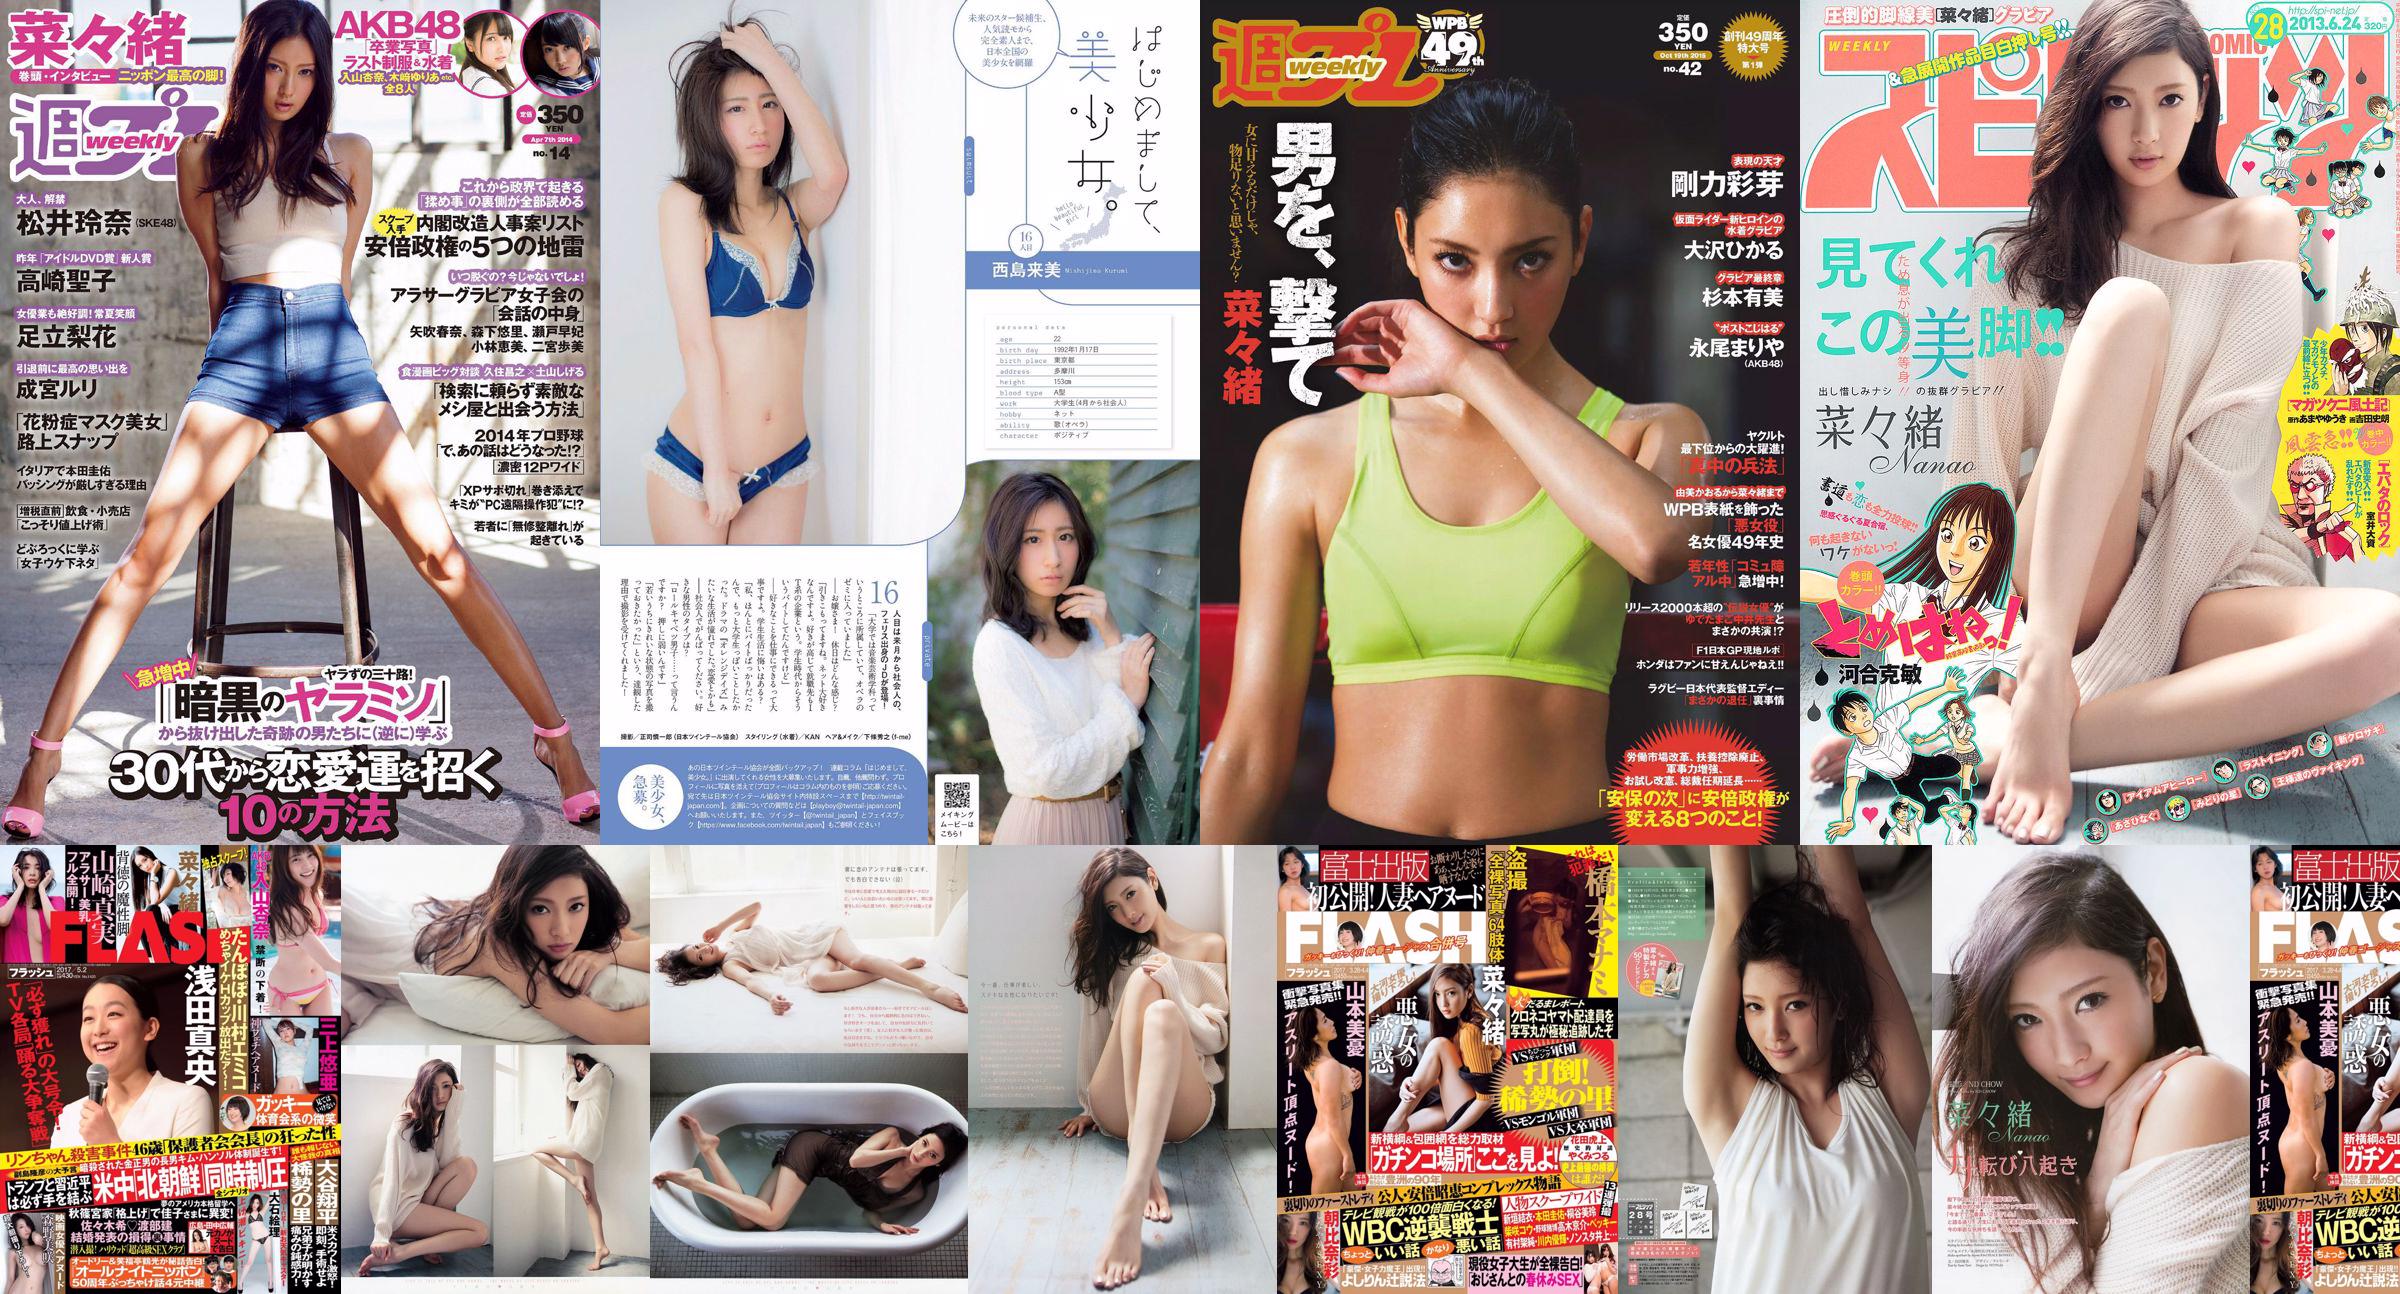 Nanao Rena Matsui Rika Adachi Natsuo Sawada Seiko Takasaki Nekomu Otogi Minami Kojima Ruri Narumiya [Wöchentlicher Playboy] 2014 Nr. 14 Foto No.7351fa Seite 3